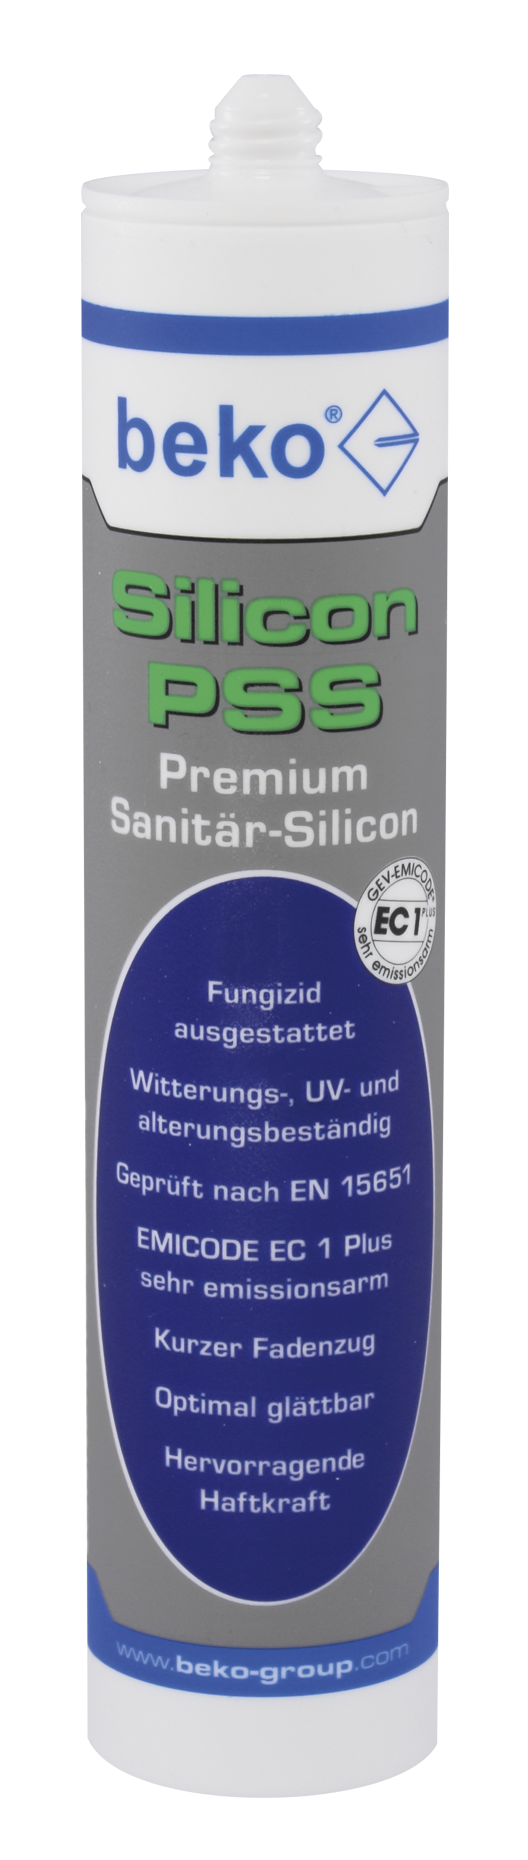 Beko Silicon PSS 310 ml Premium-Sanitär-Silicon